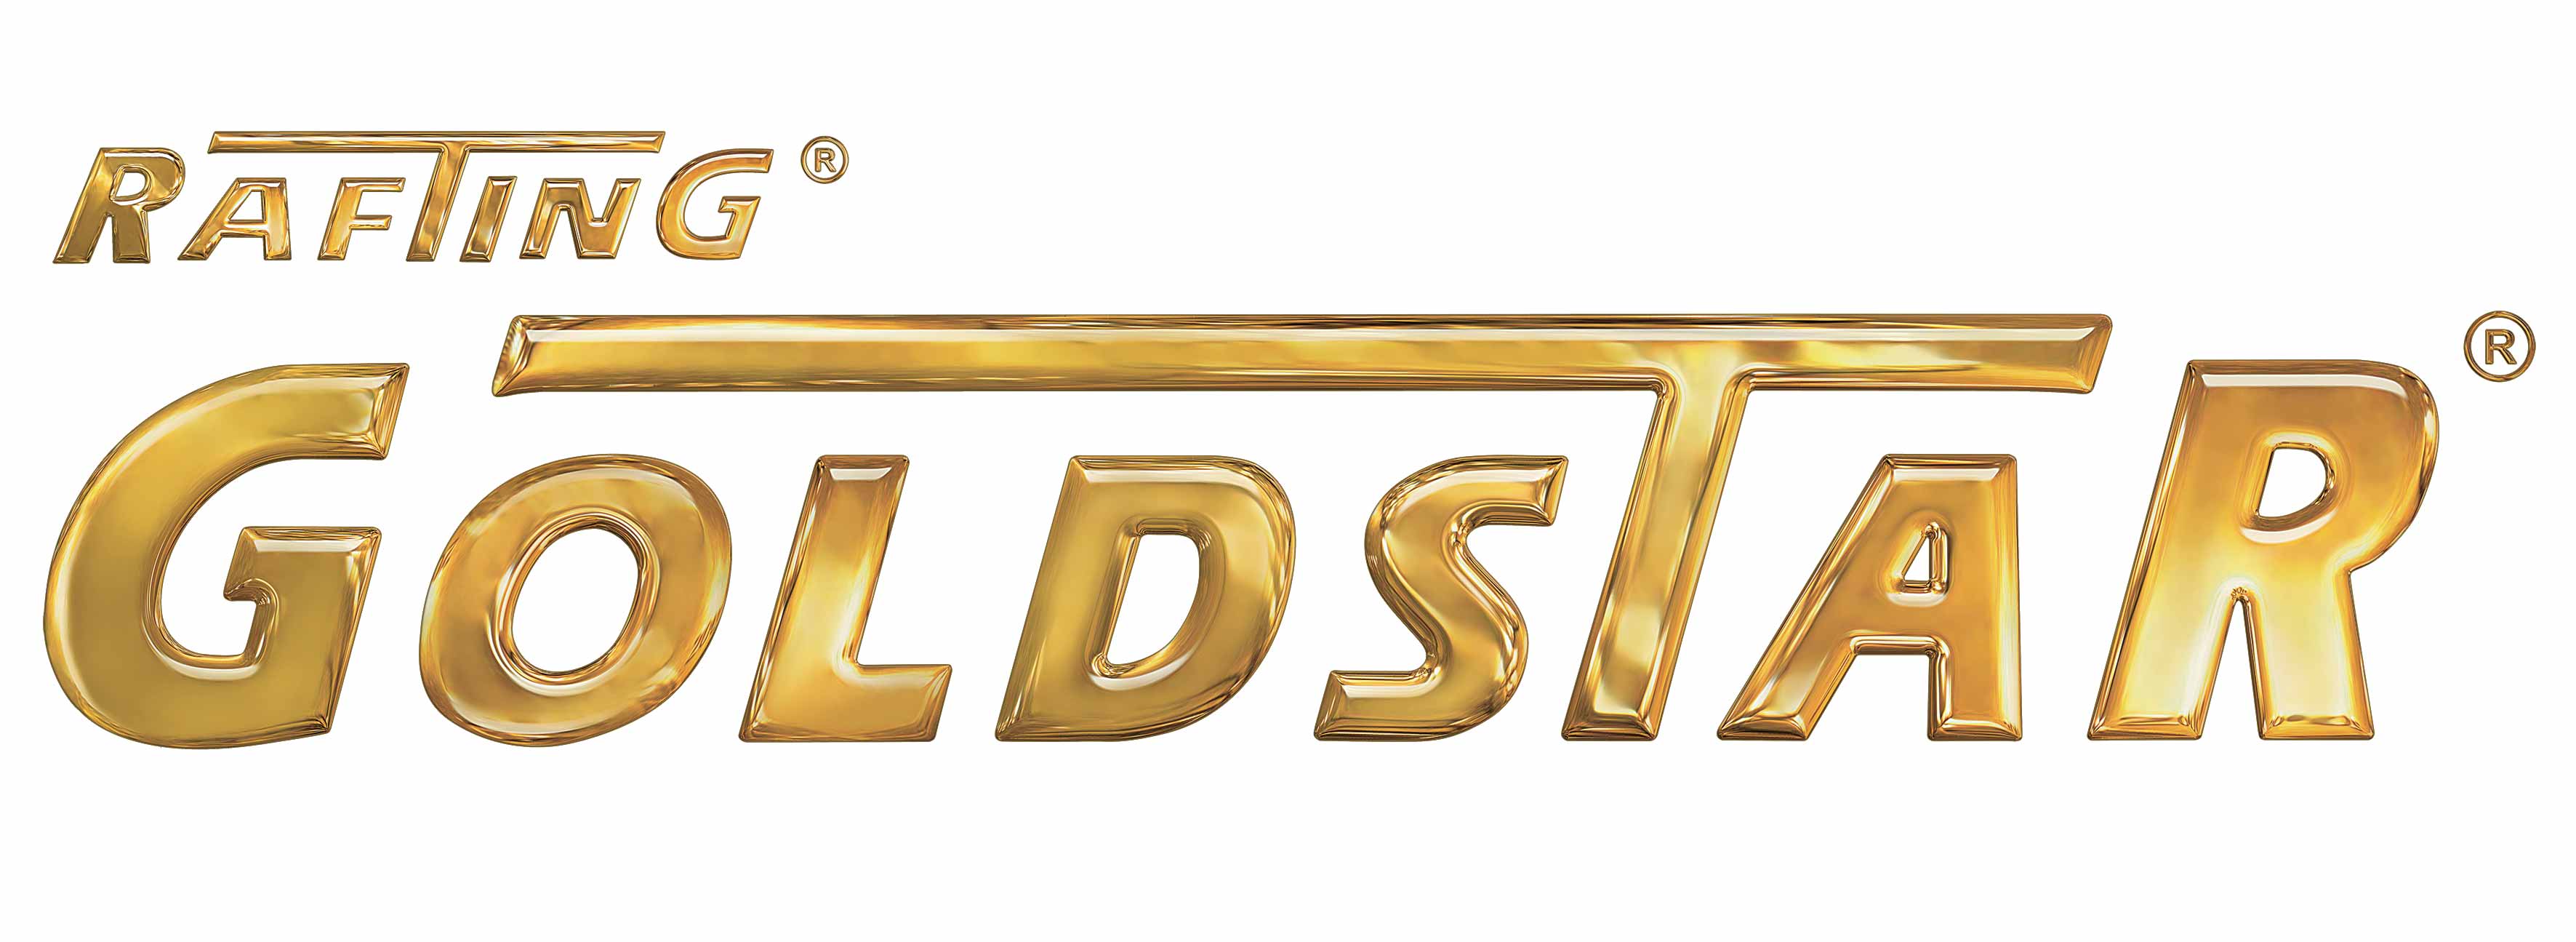 Logo Goldstar